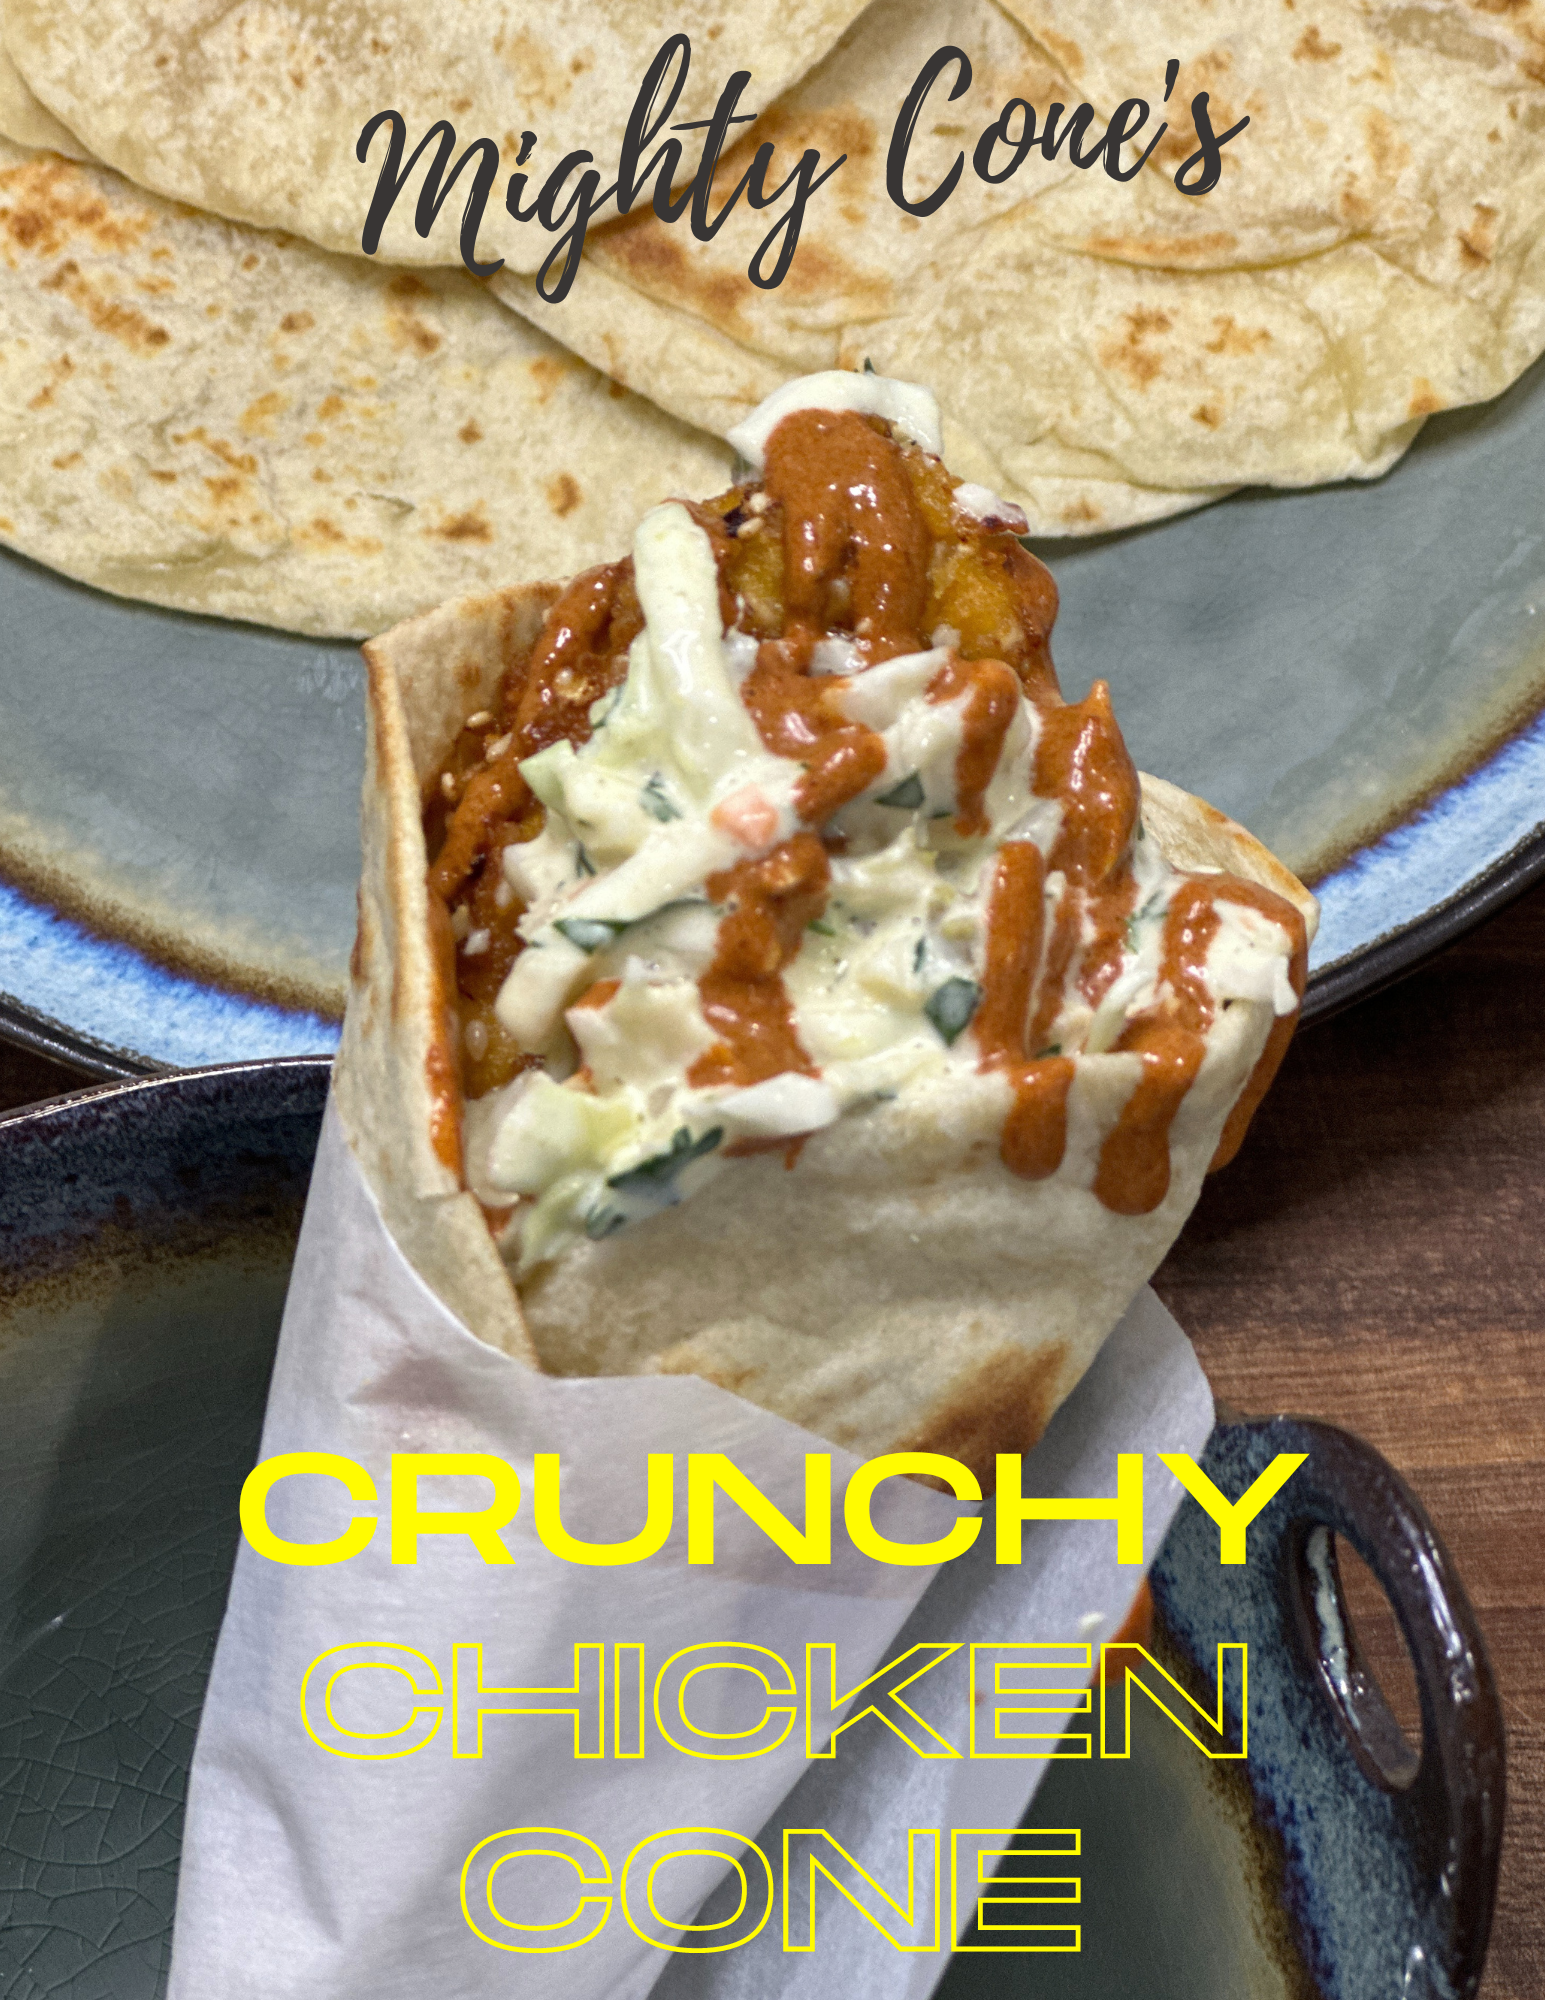 Crunchy Chicken Cone